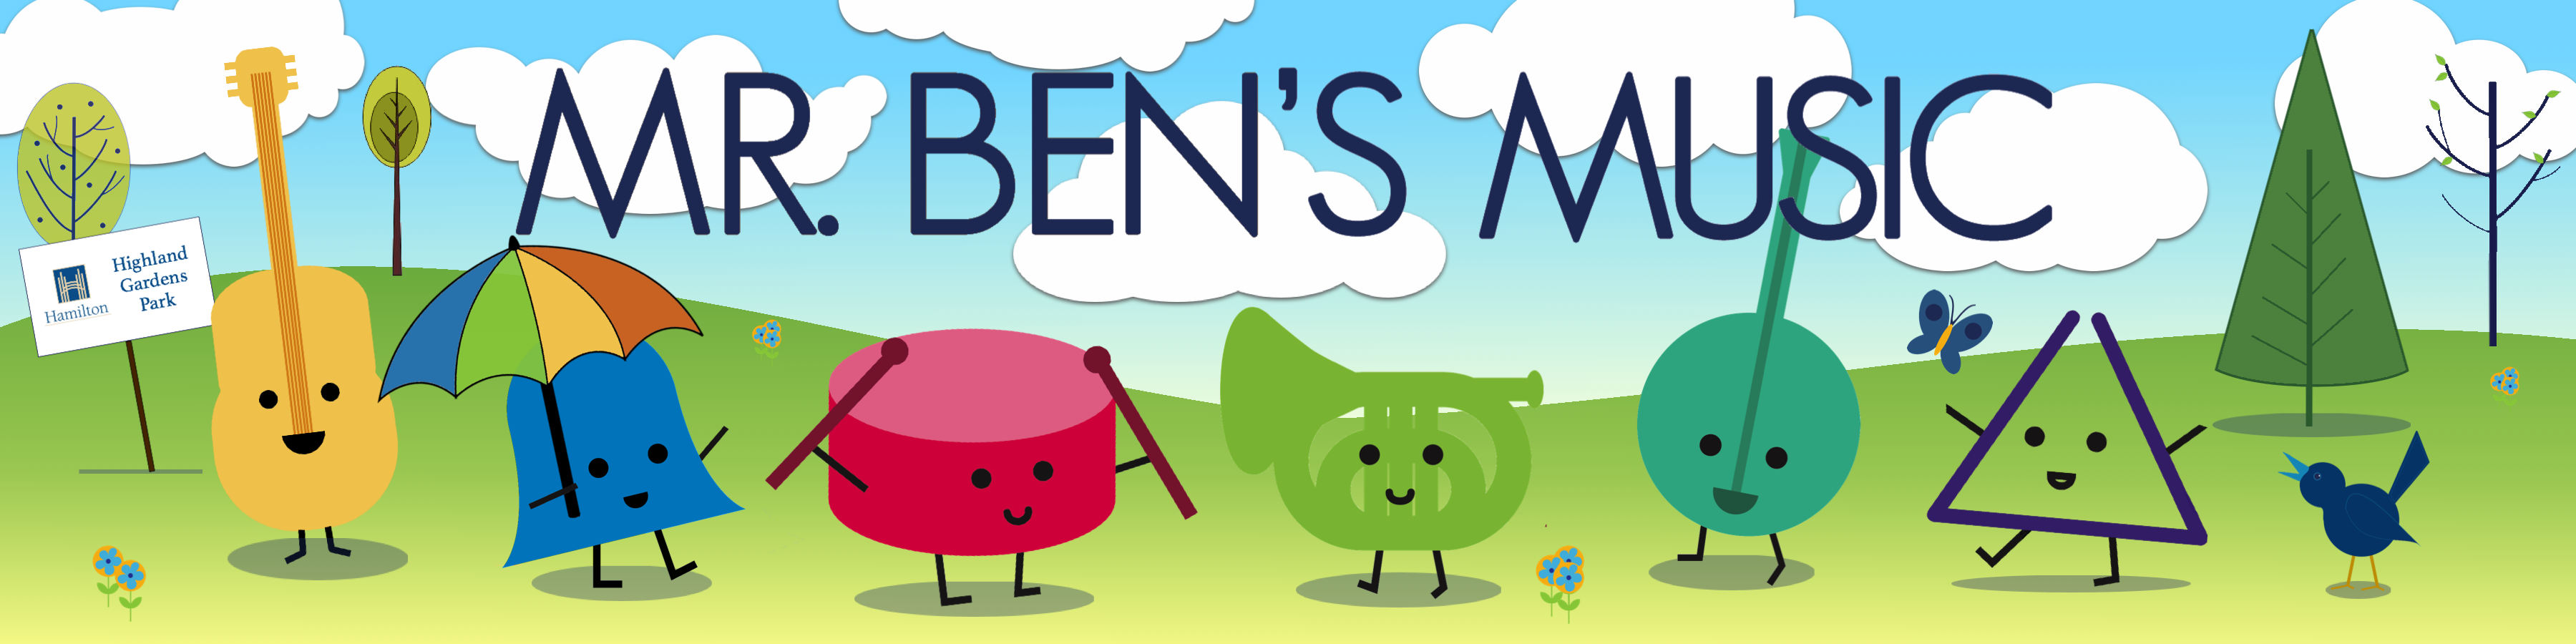 Mr. Ben’s Music banner